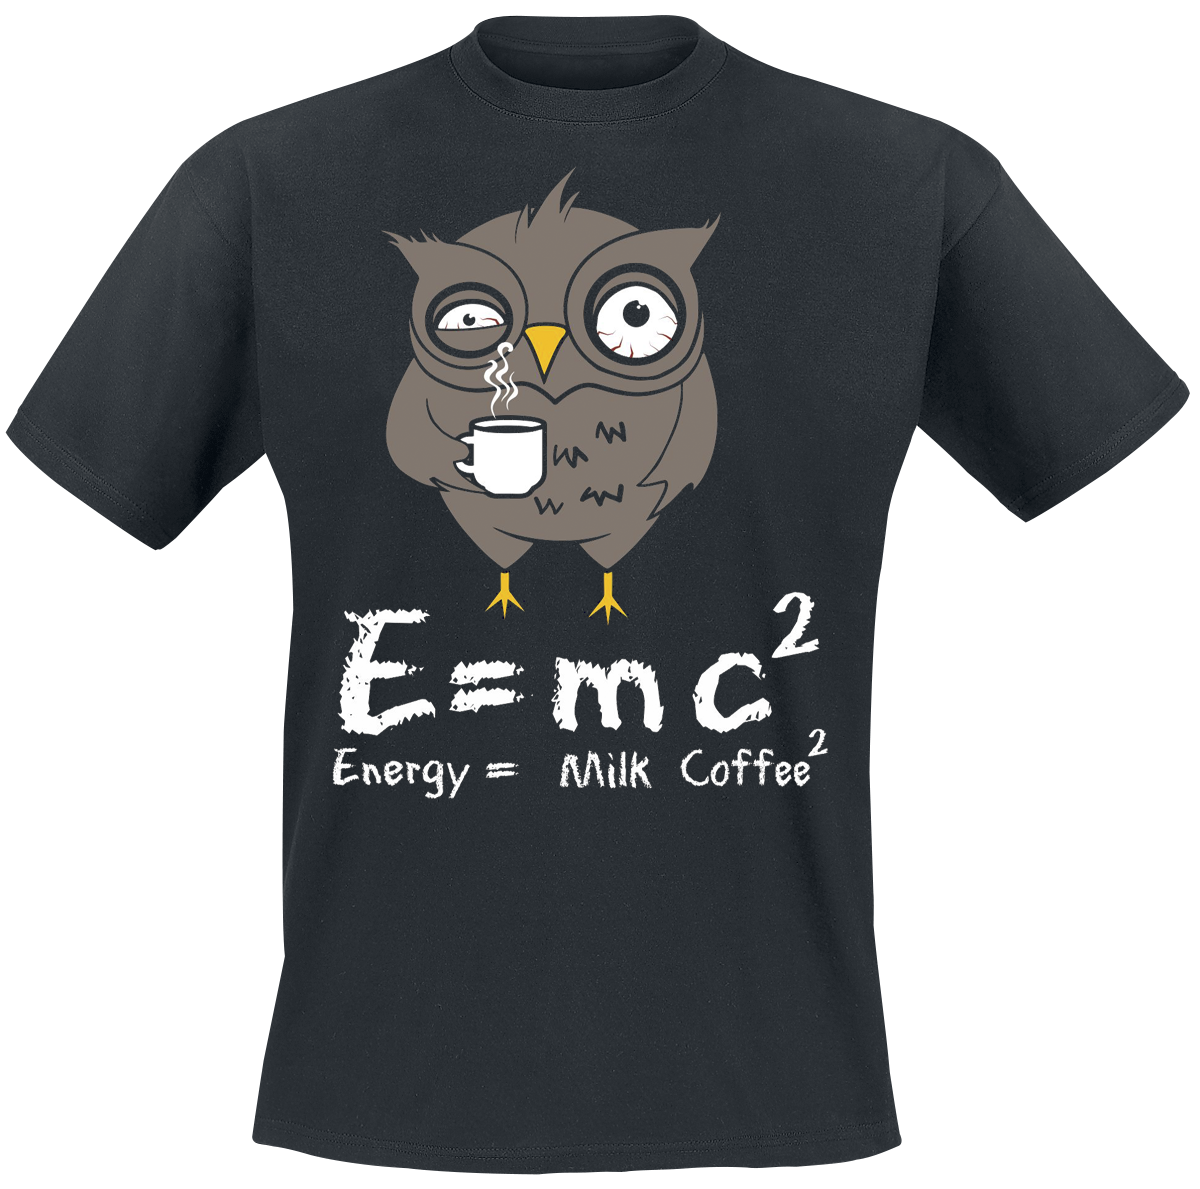 Tierisch - Energy Milk Coffee - T-Shirt - schwarz